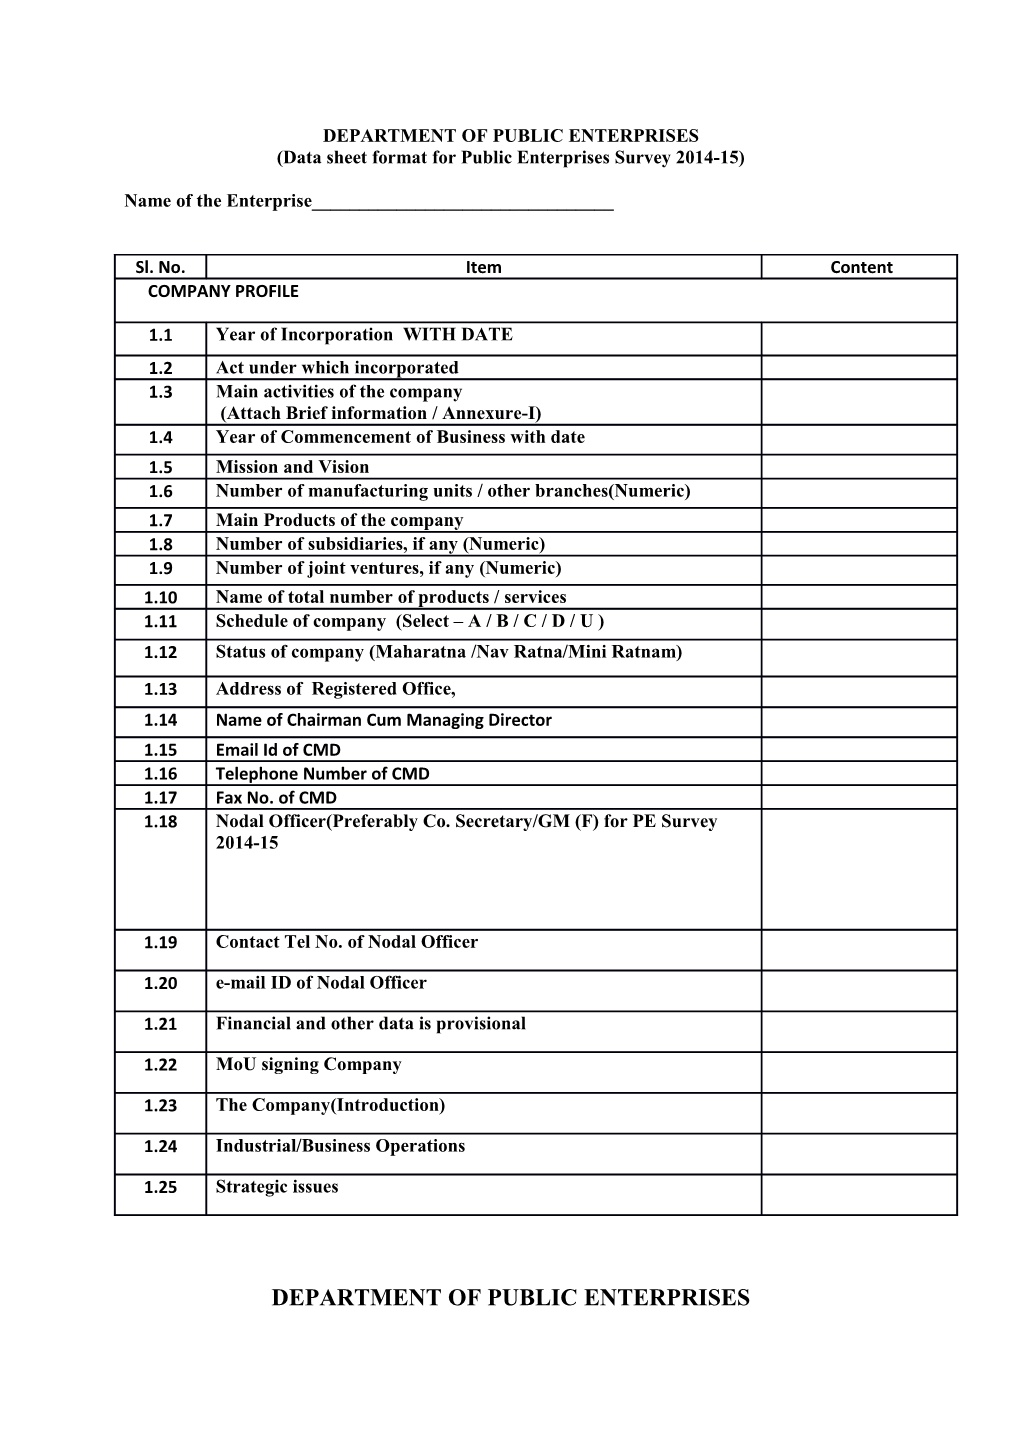 Data Sheet Format for Public Enterprises Survey 2014-15